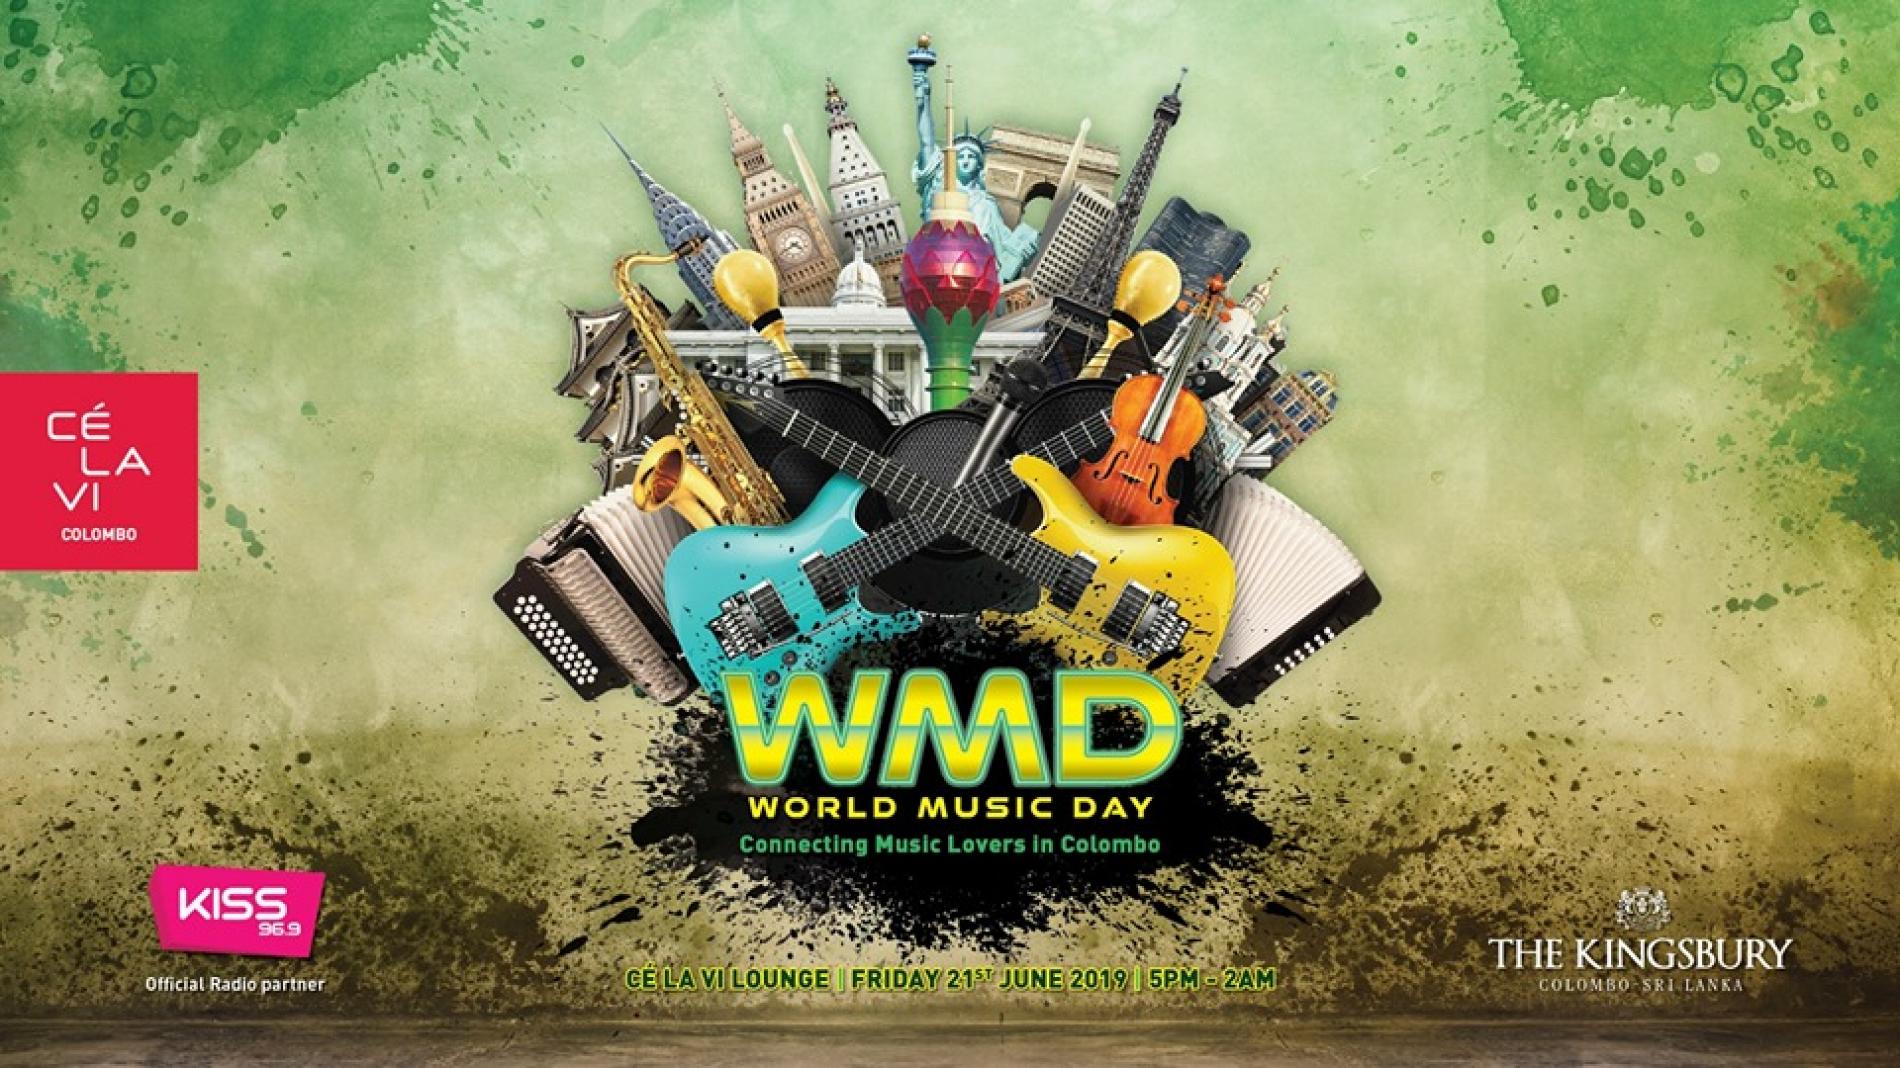 World Music Day at CÉ LA VI